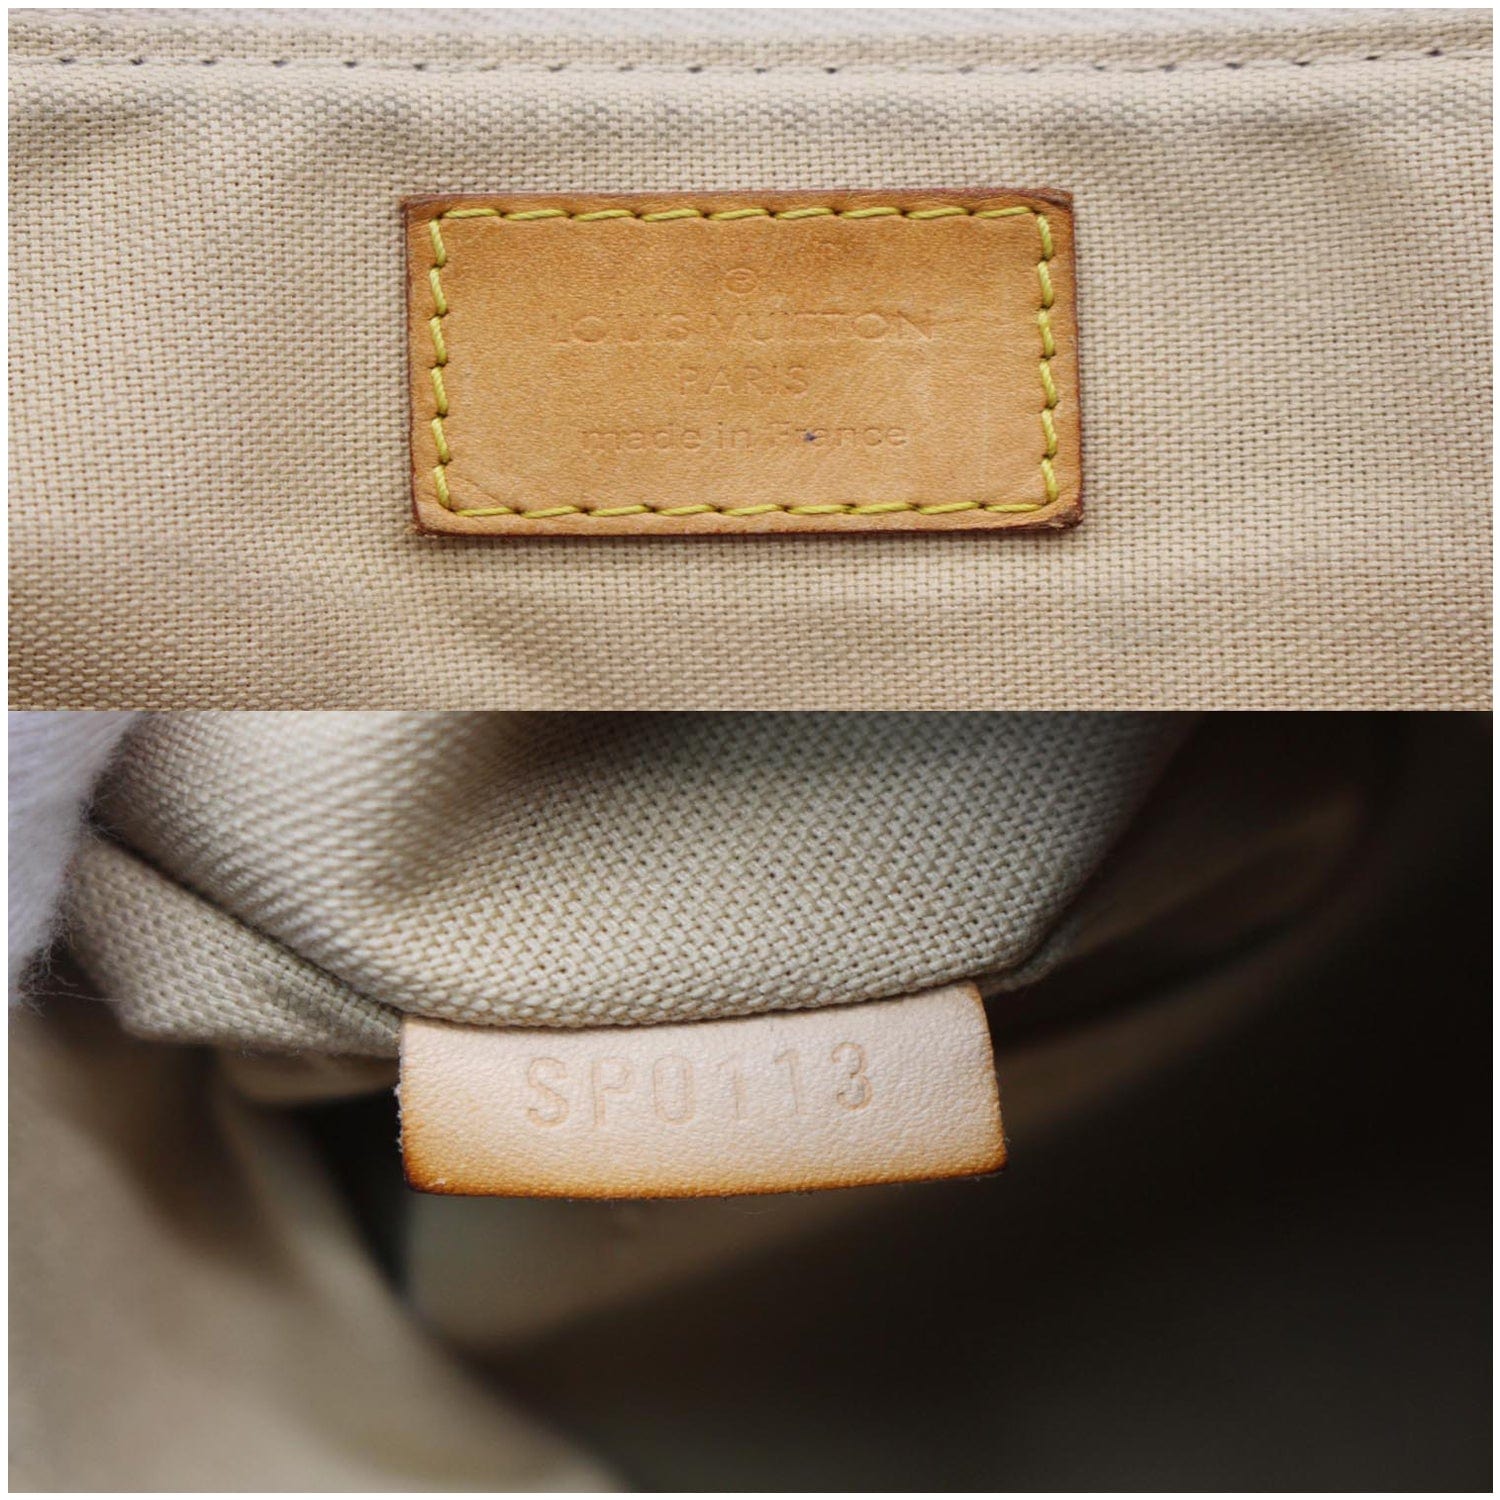 Louis Vuitton Siracusa PM Damier azur Bag – The Find